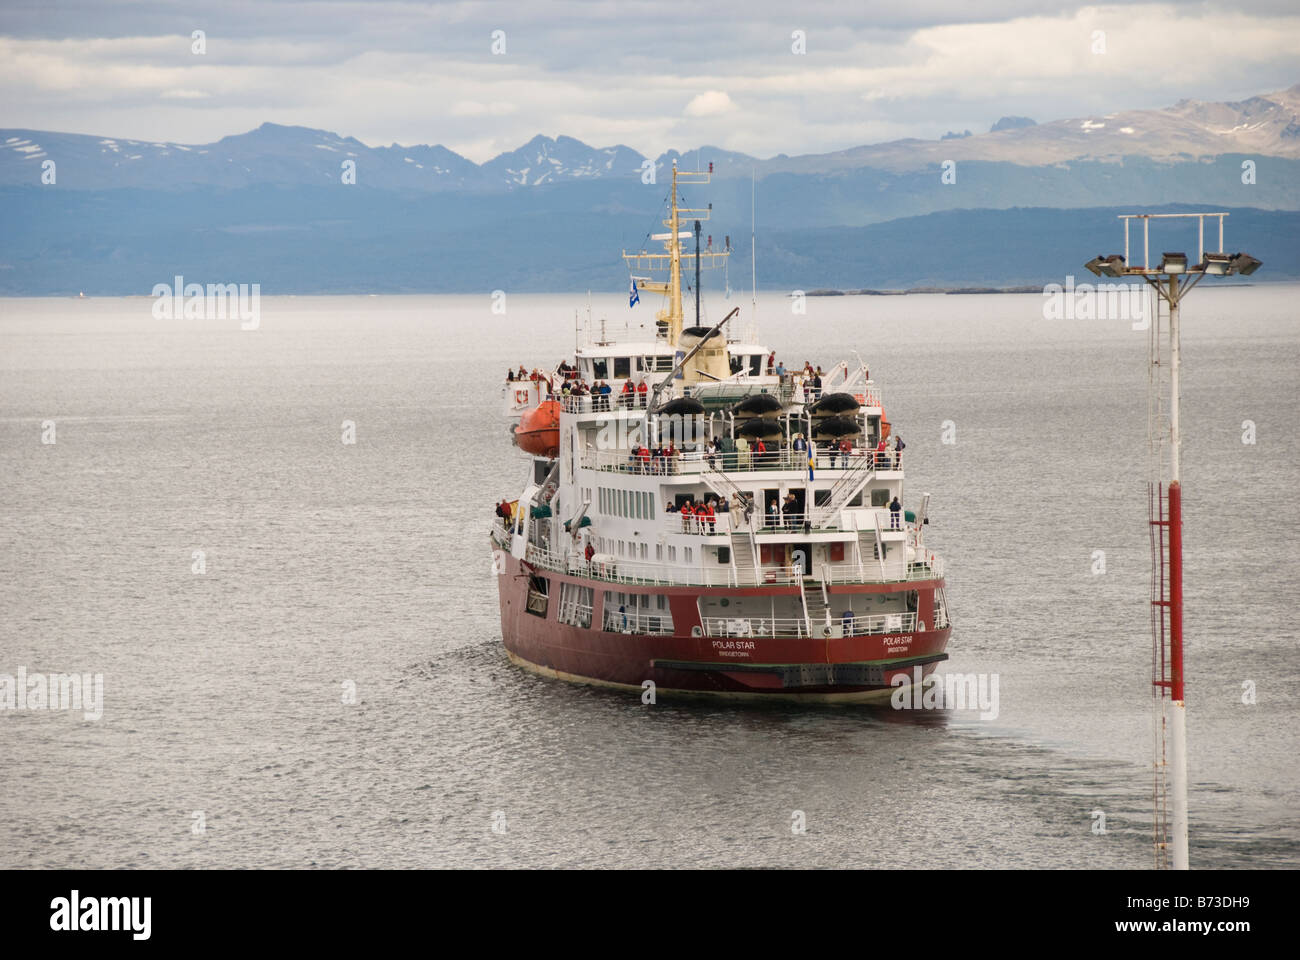 Icebreaker turned cruise ship leaveing port at Ushuaia Stock Photo